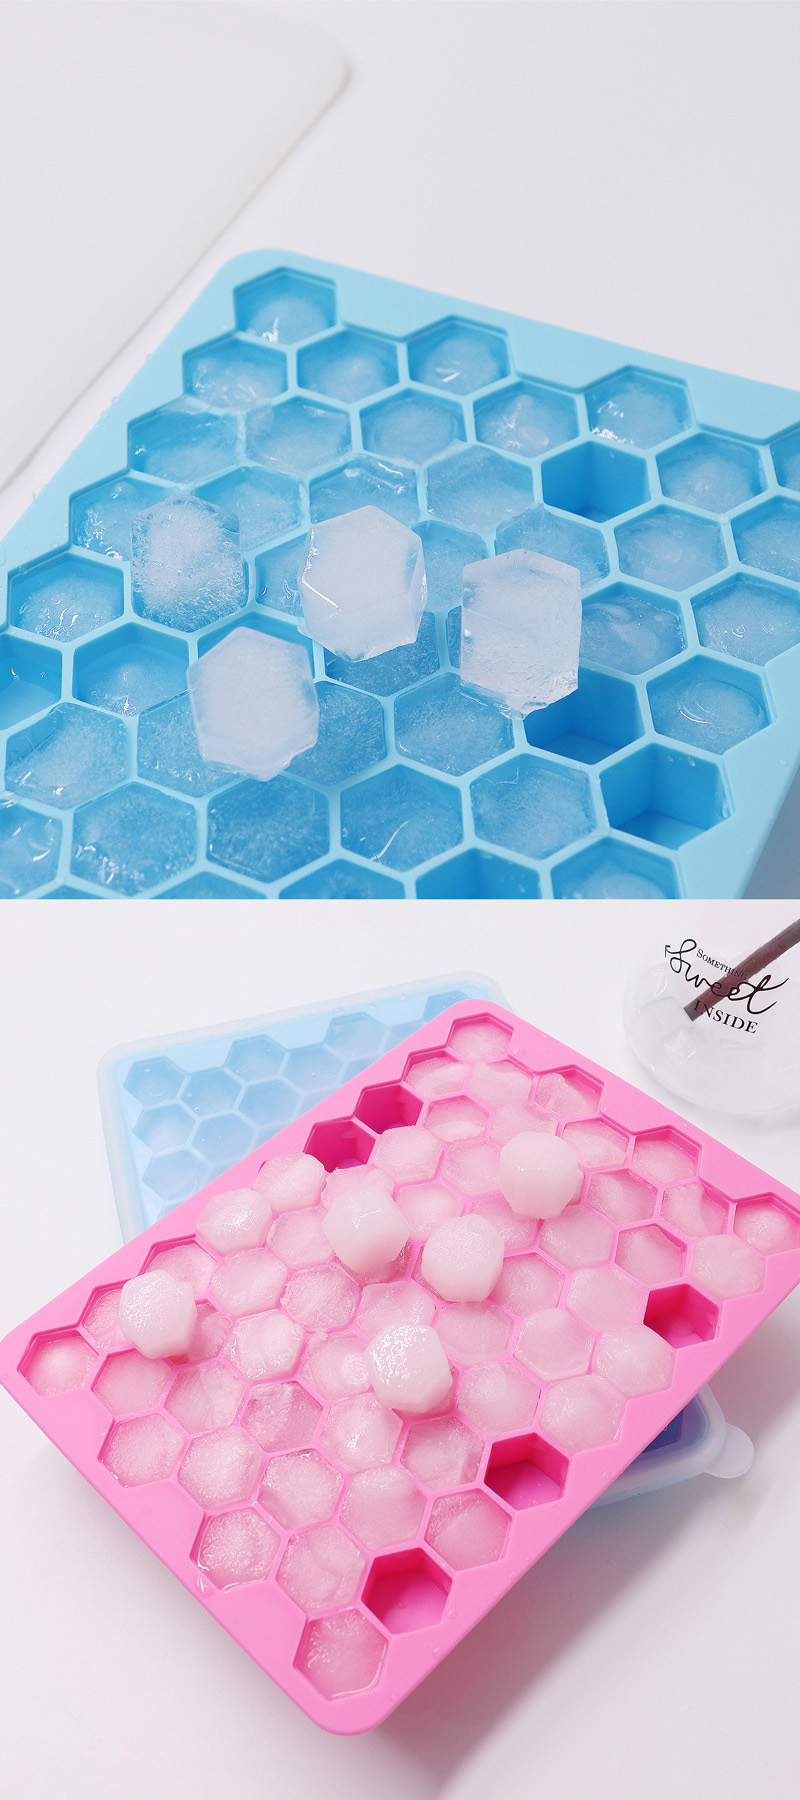 シリコン アイス キューブ メーカー ロゴ カスタマイズ可能なシリコン アイス キューブ トレイ蓋付きアイス モールド